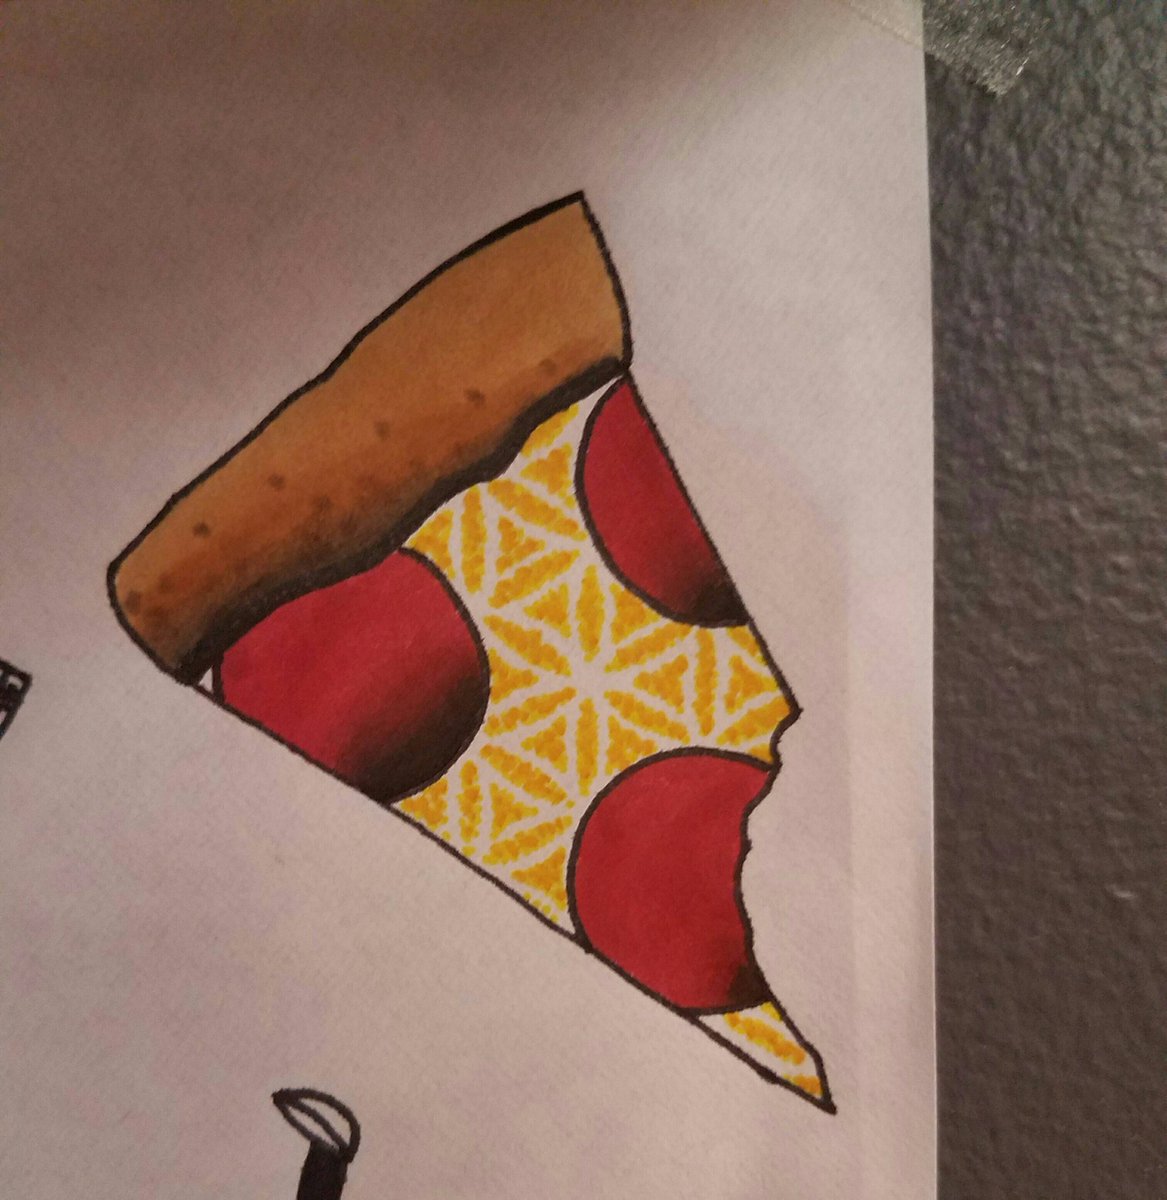 Geometric pizza slice that Dustin drew up, someone help this design find a good home! #telltalehearttattoocompany #pizzatattoo #jaxtattoos